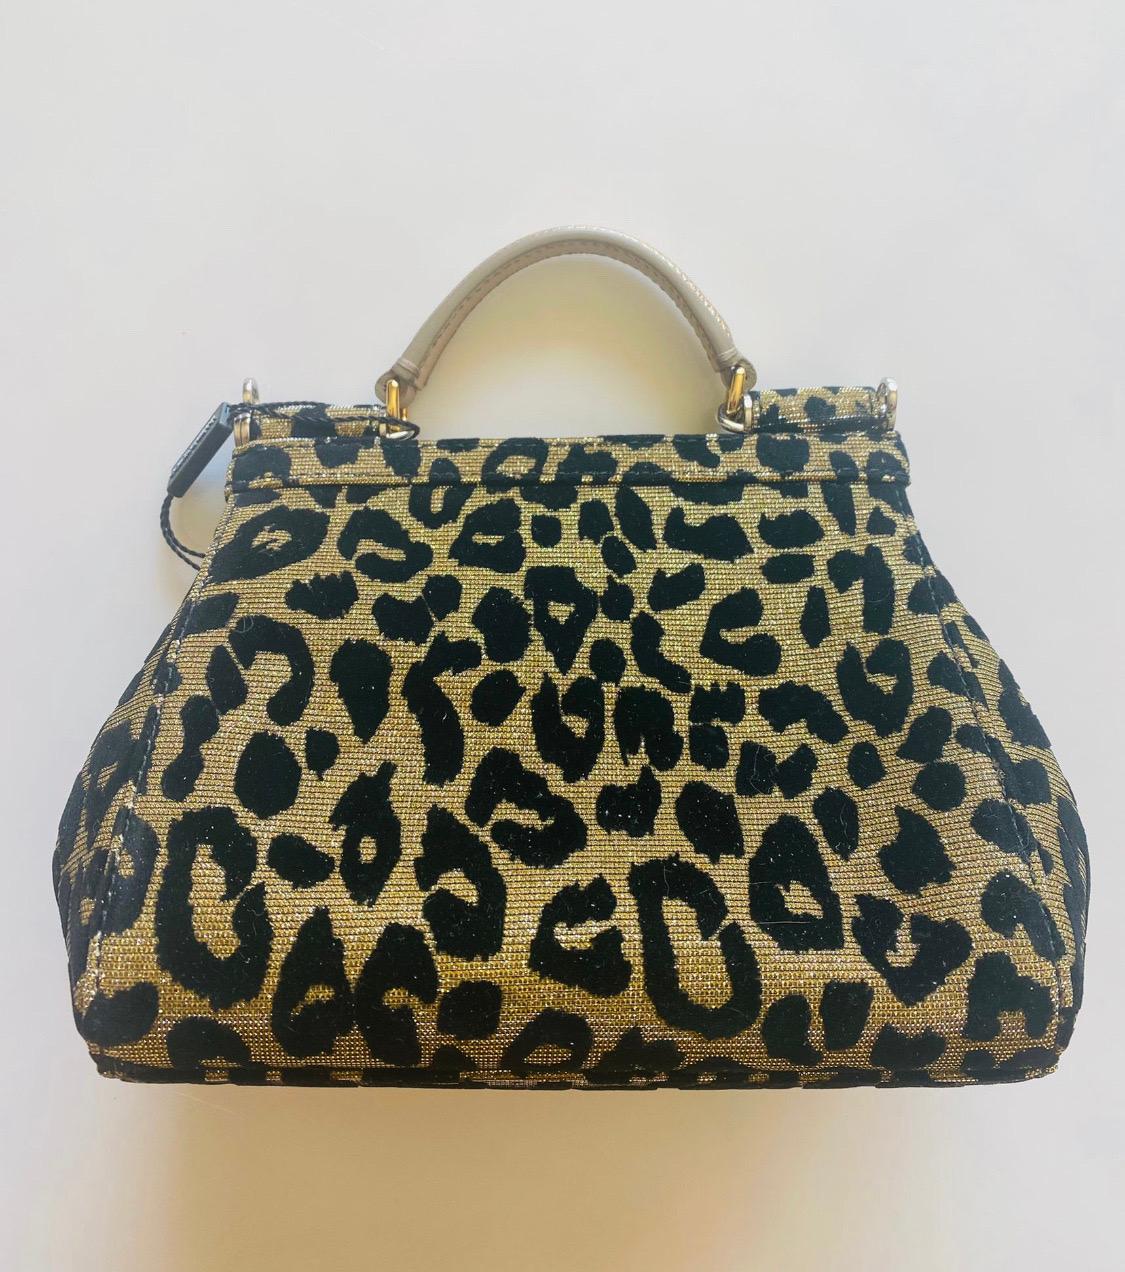 leopard shoulder bag